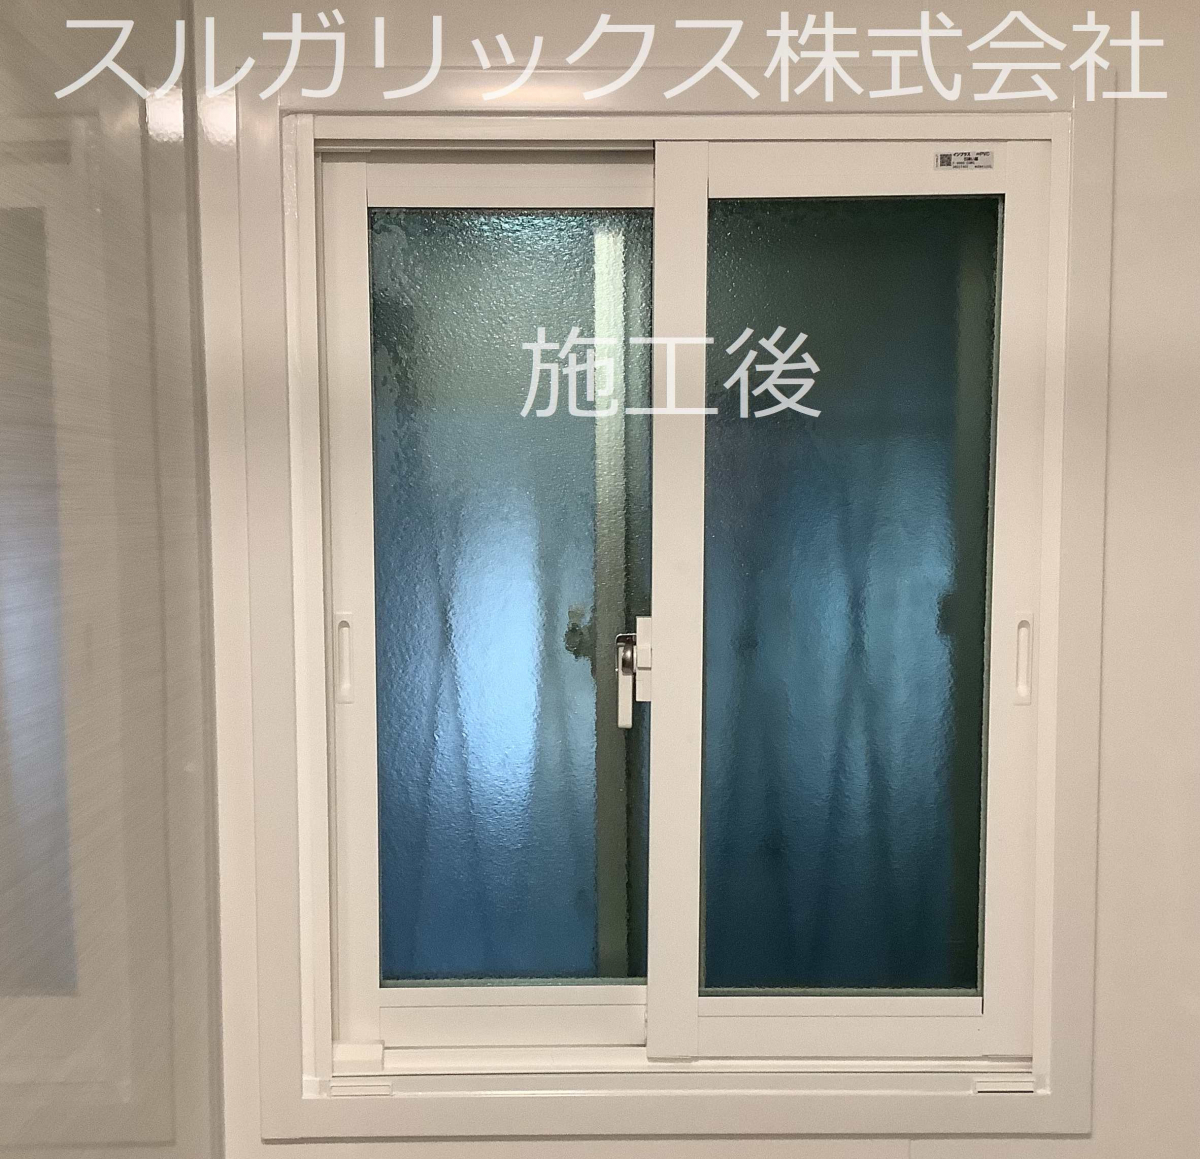 スルガリックス 静岡店の浴室の窓を断熱改修したいの施工後の写真1